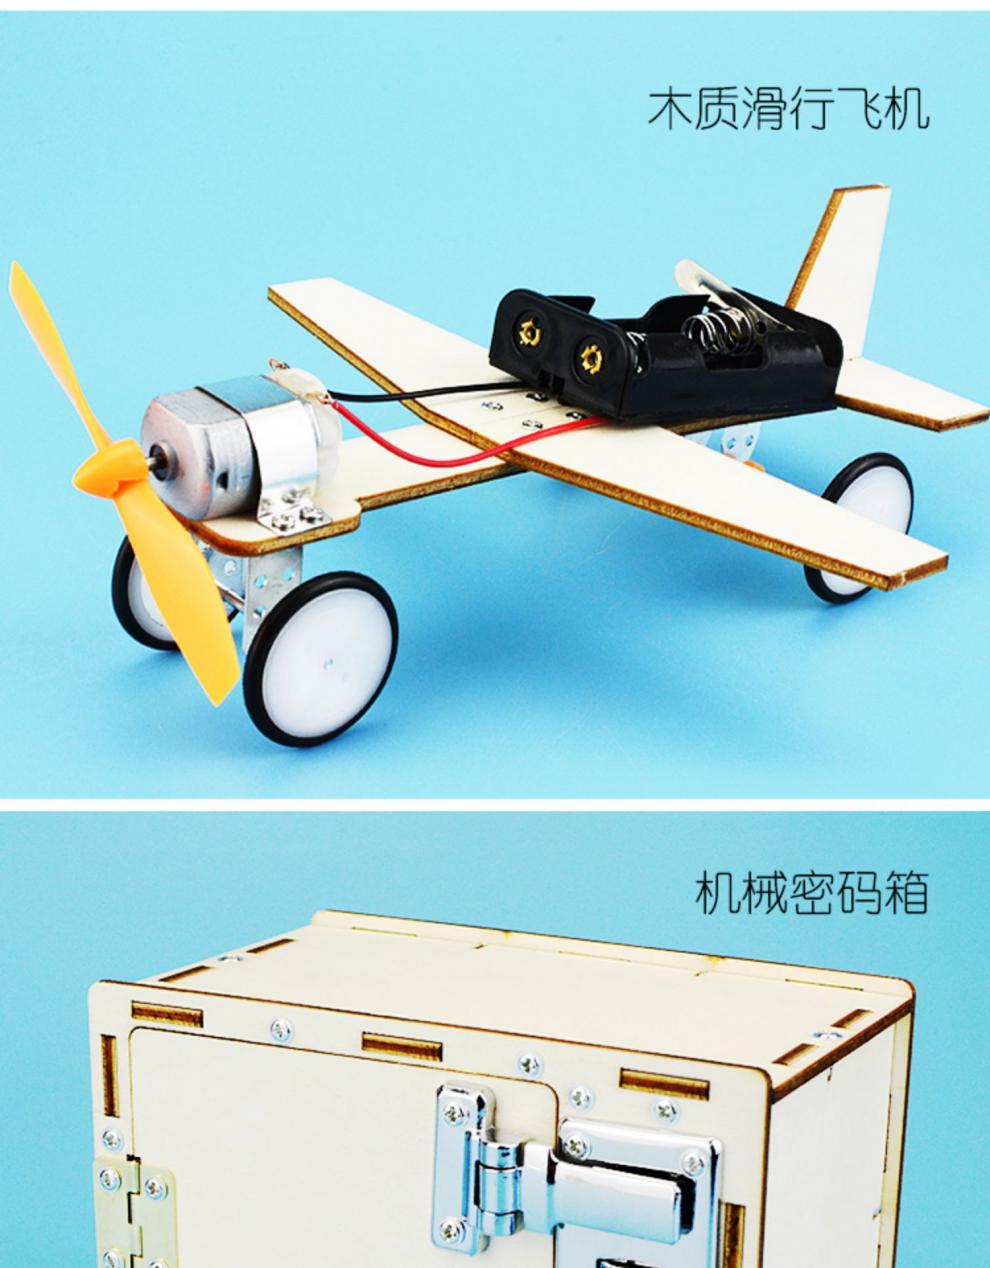 空气动力玩具 摩尼奥(moniao) 2019新品科技小制作小发明自制创客作品